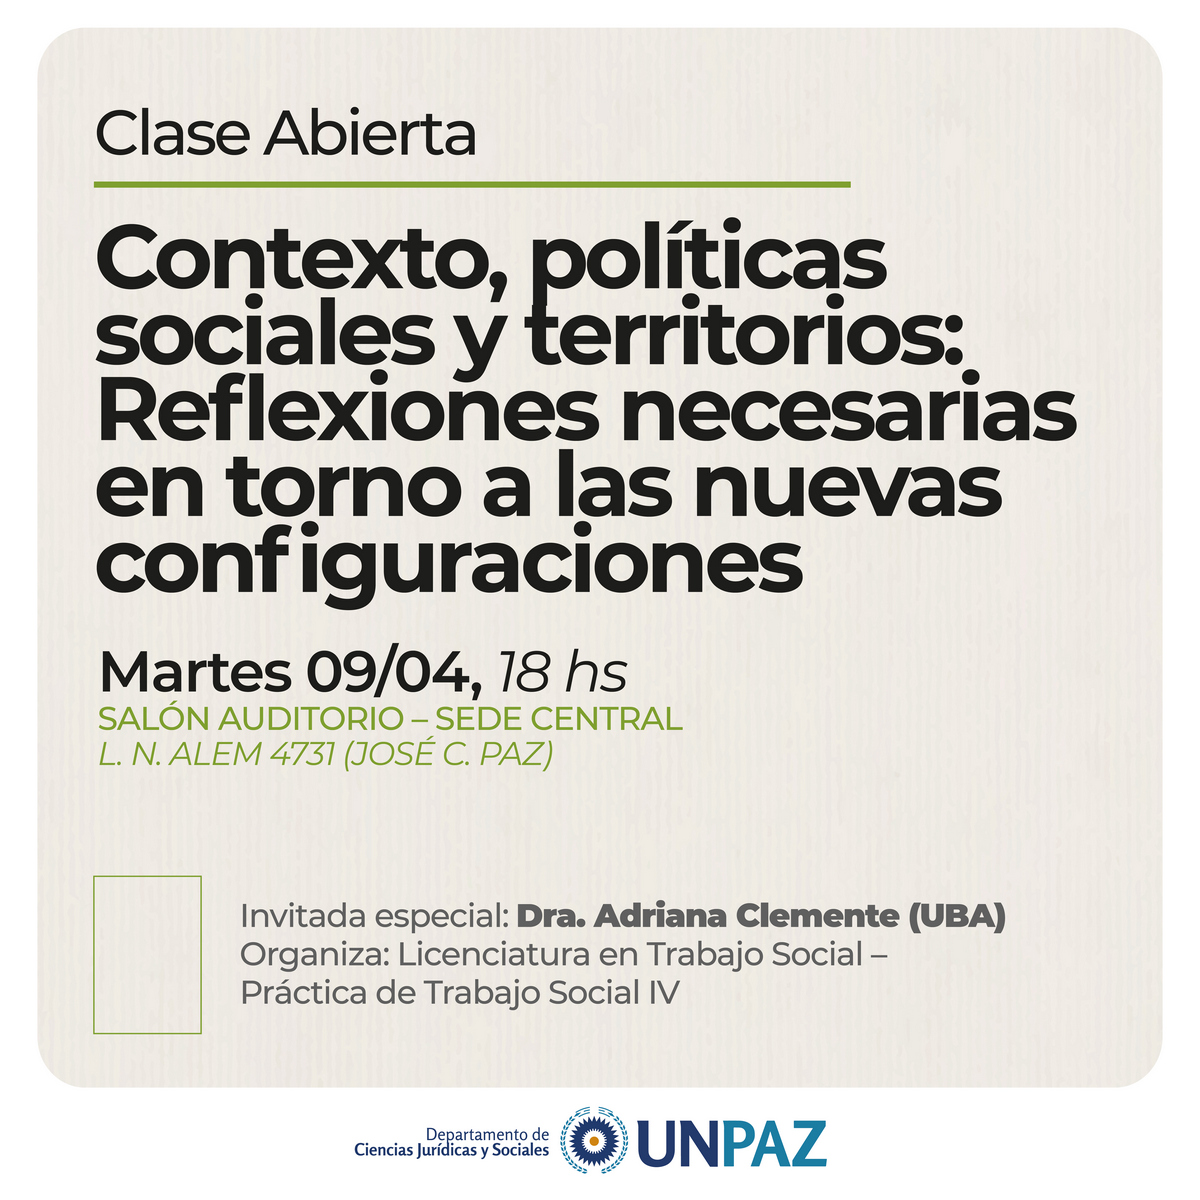 CLASE ABIERTA. “Contexto, políticas sociales y territorios:  Reflexiones necesarias en torno a las nuevas configuraciones”